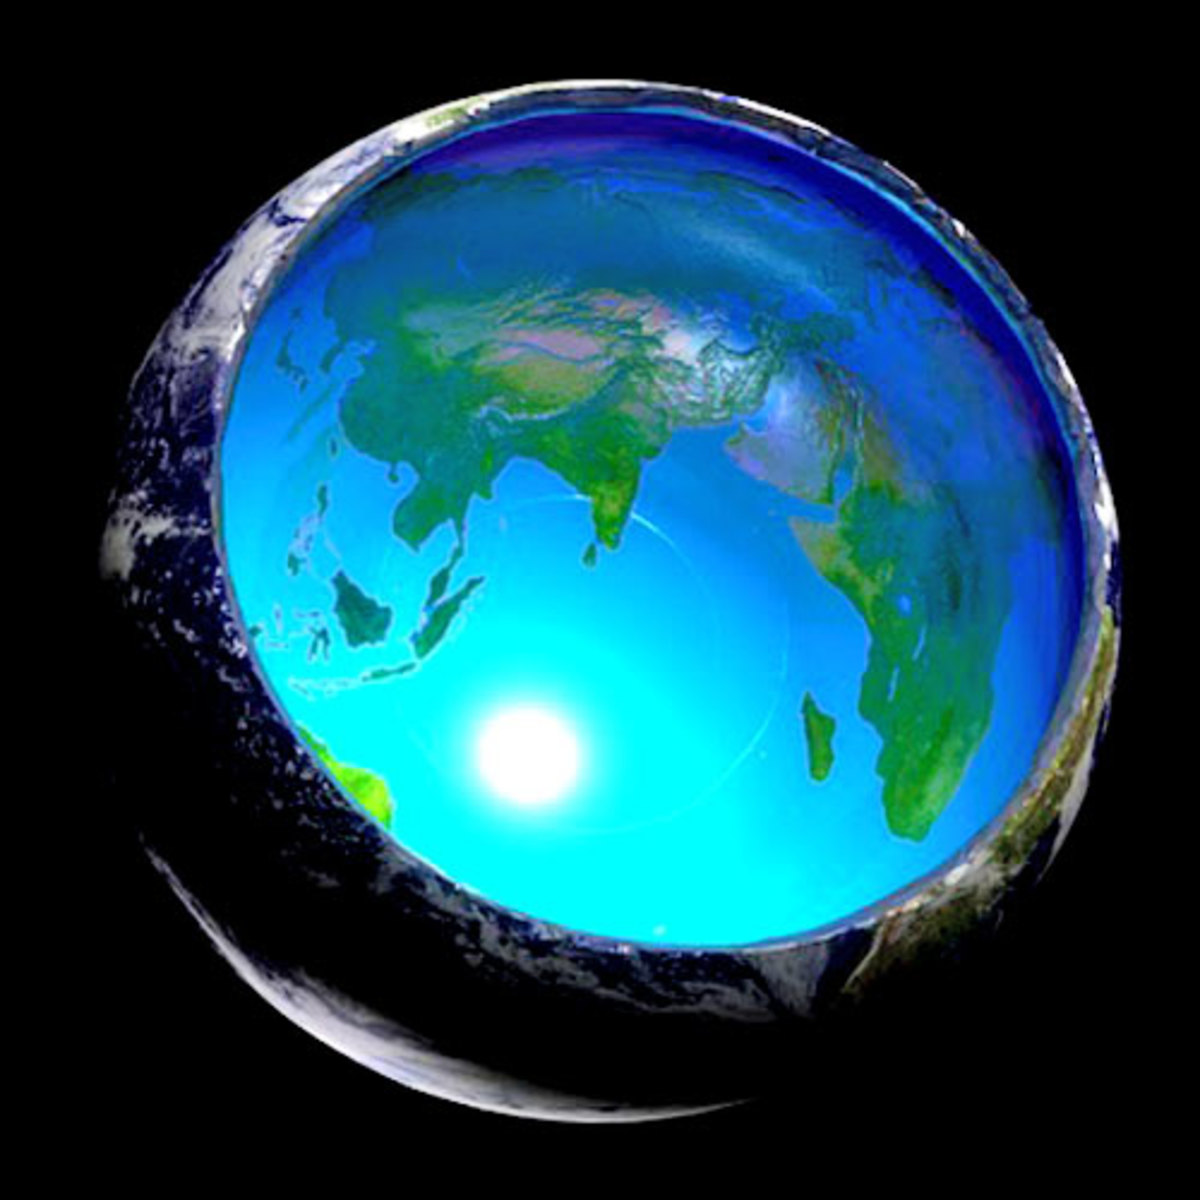 Cette vue en coupe de notre planète montre le soleil intérieur et les continents à l'intérieur de notre planète.